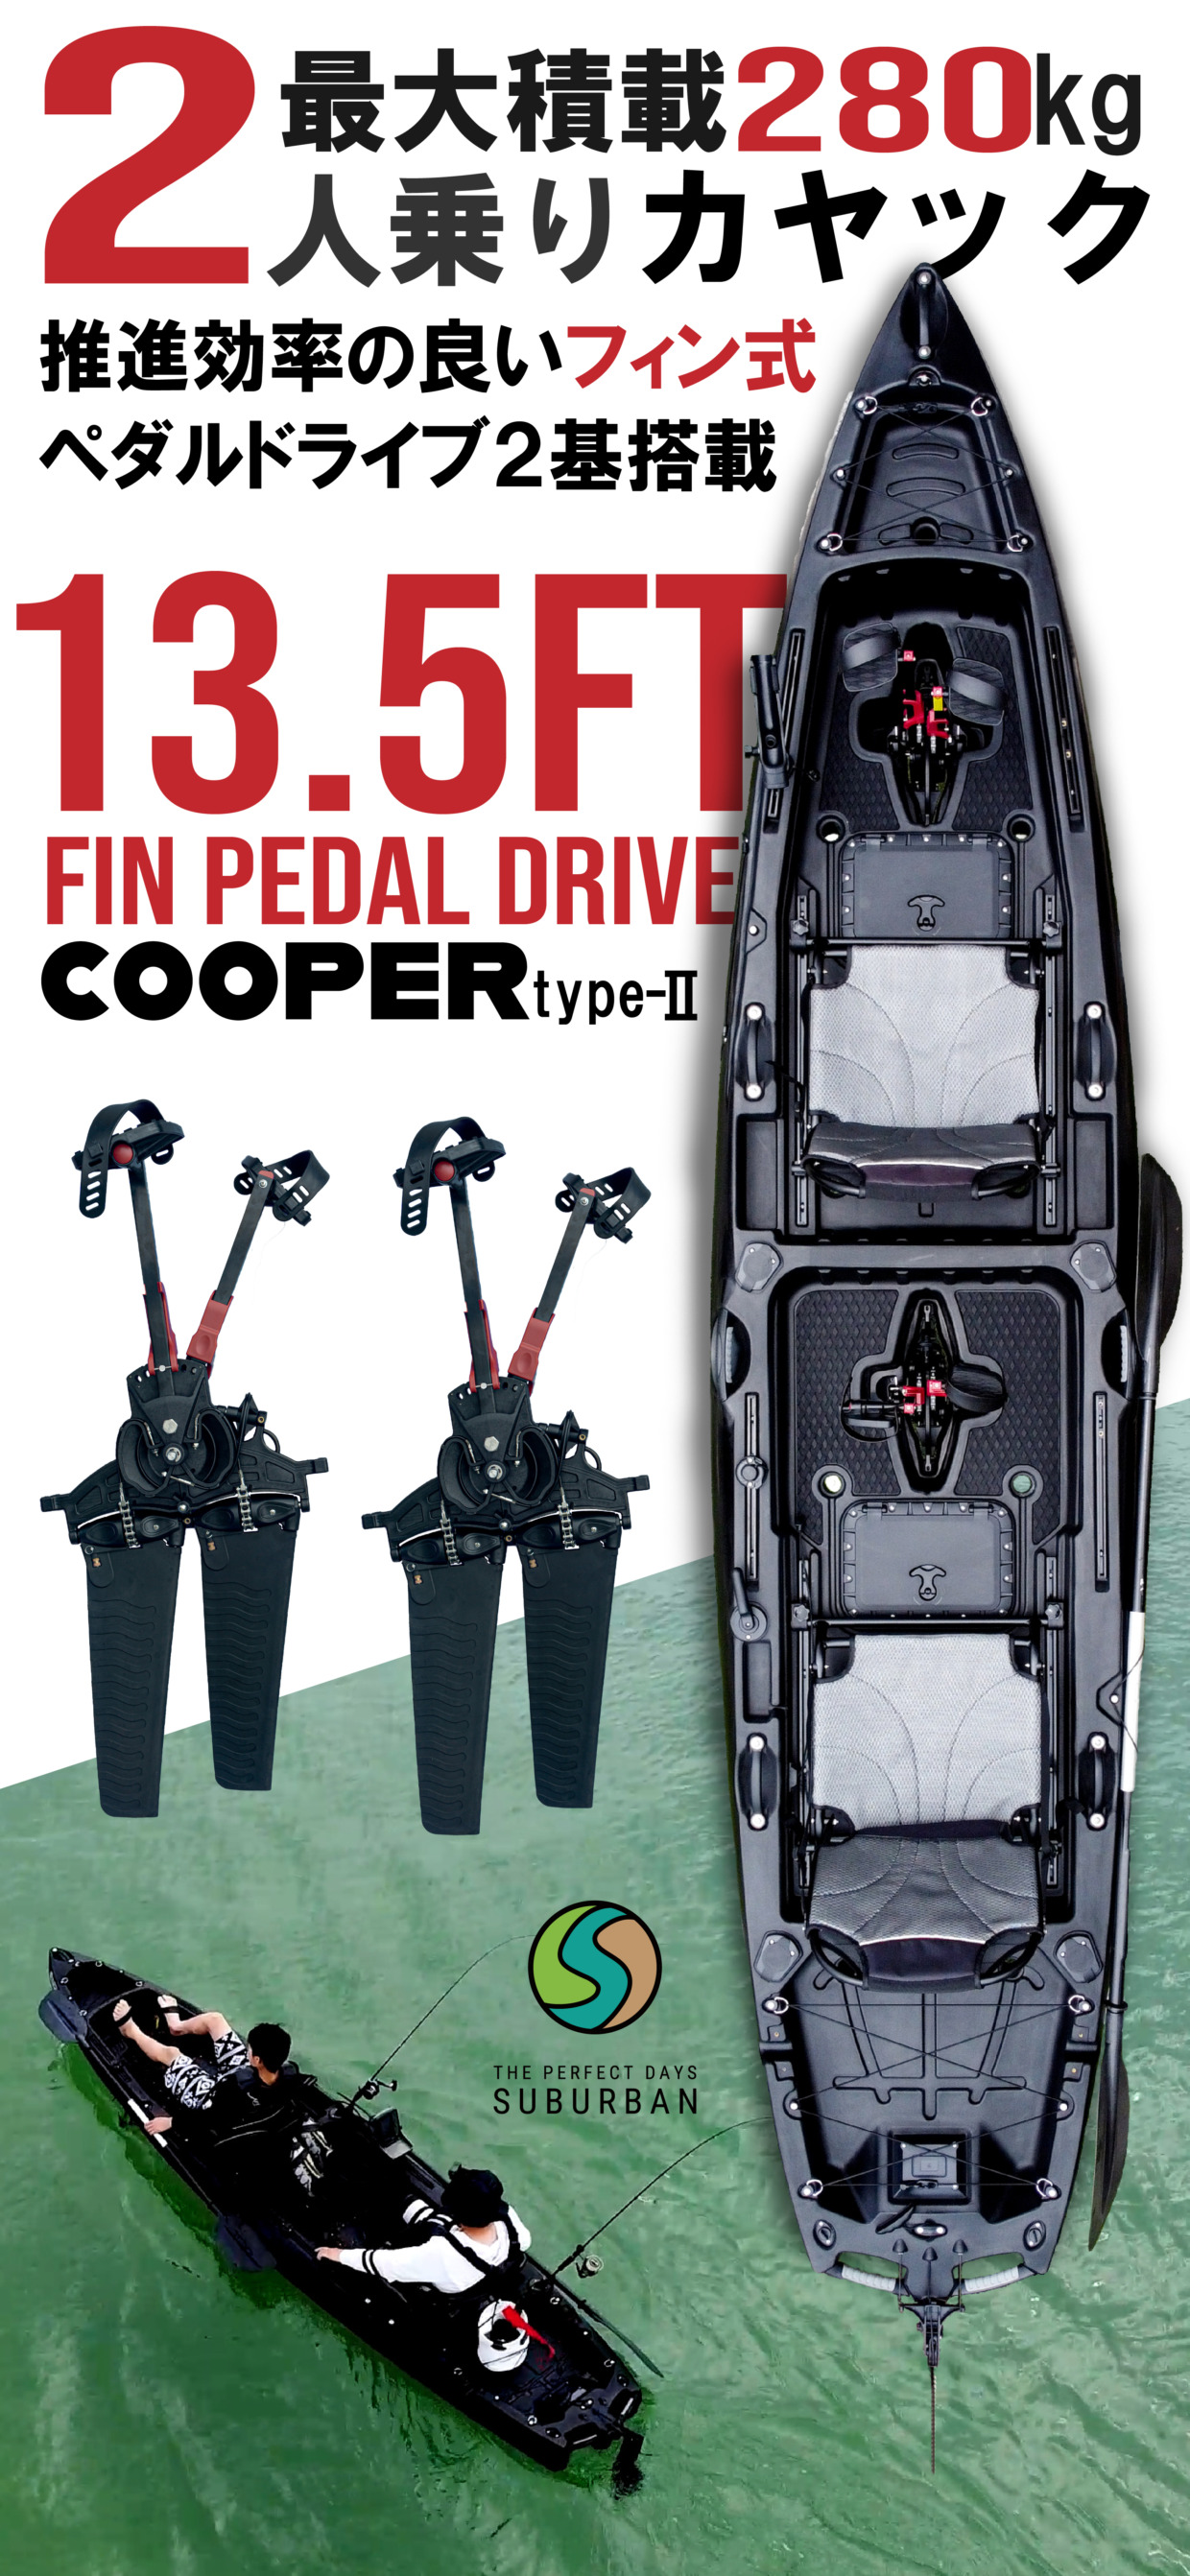 COOPER type-II グランジブラック